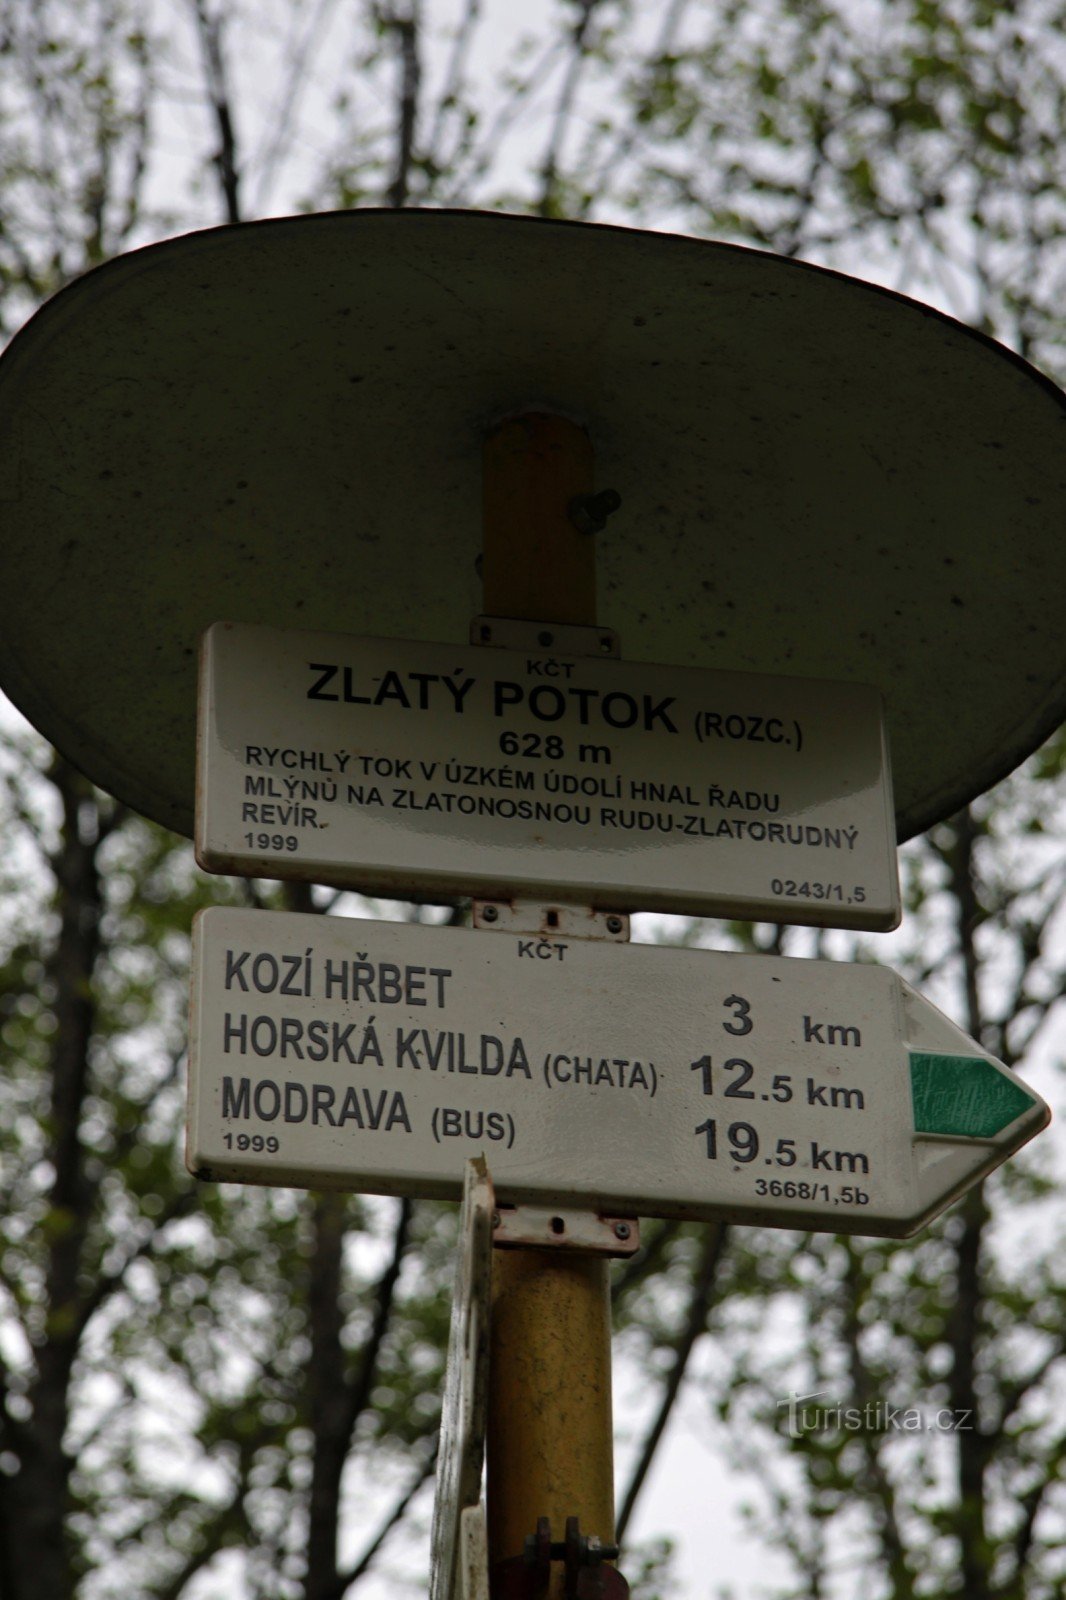 Placa de sinalização de Zlatý potok